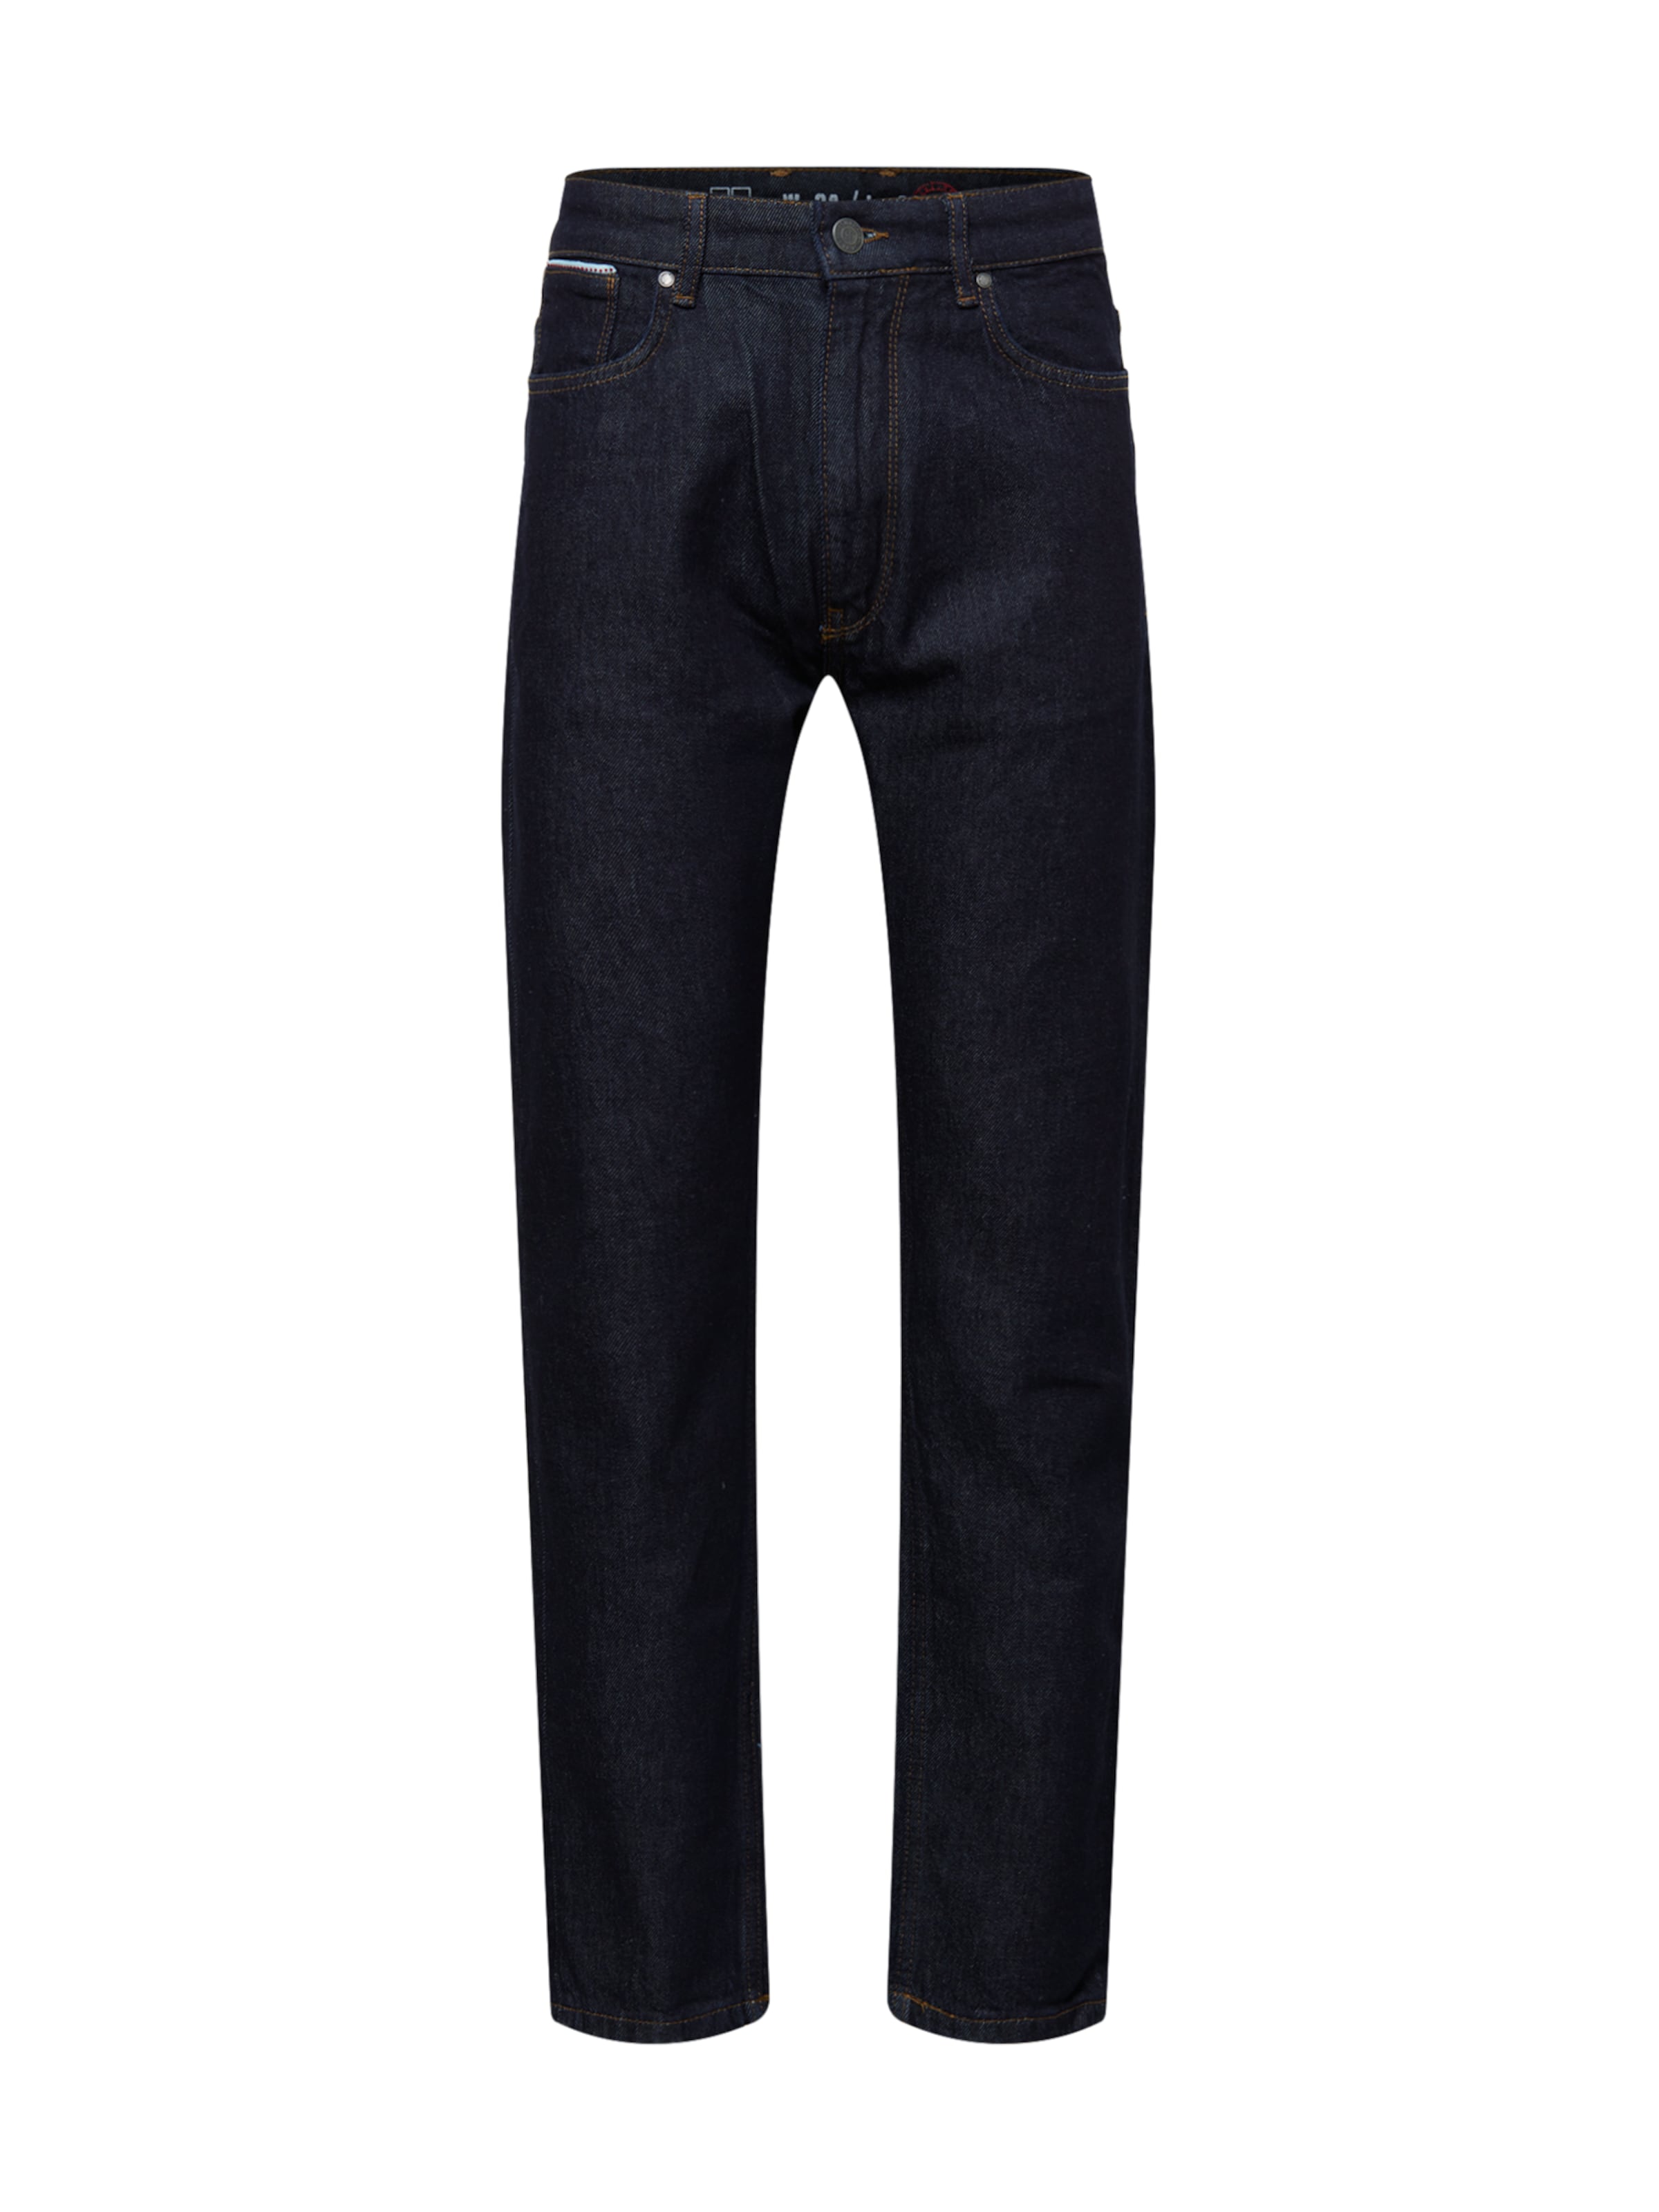 Uomo Abbigliamento Hailys Men Jeans James in Blu Scuro 